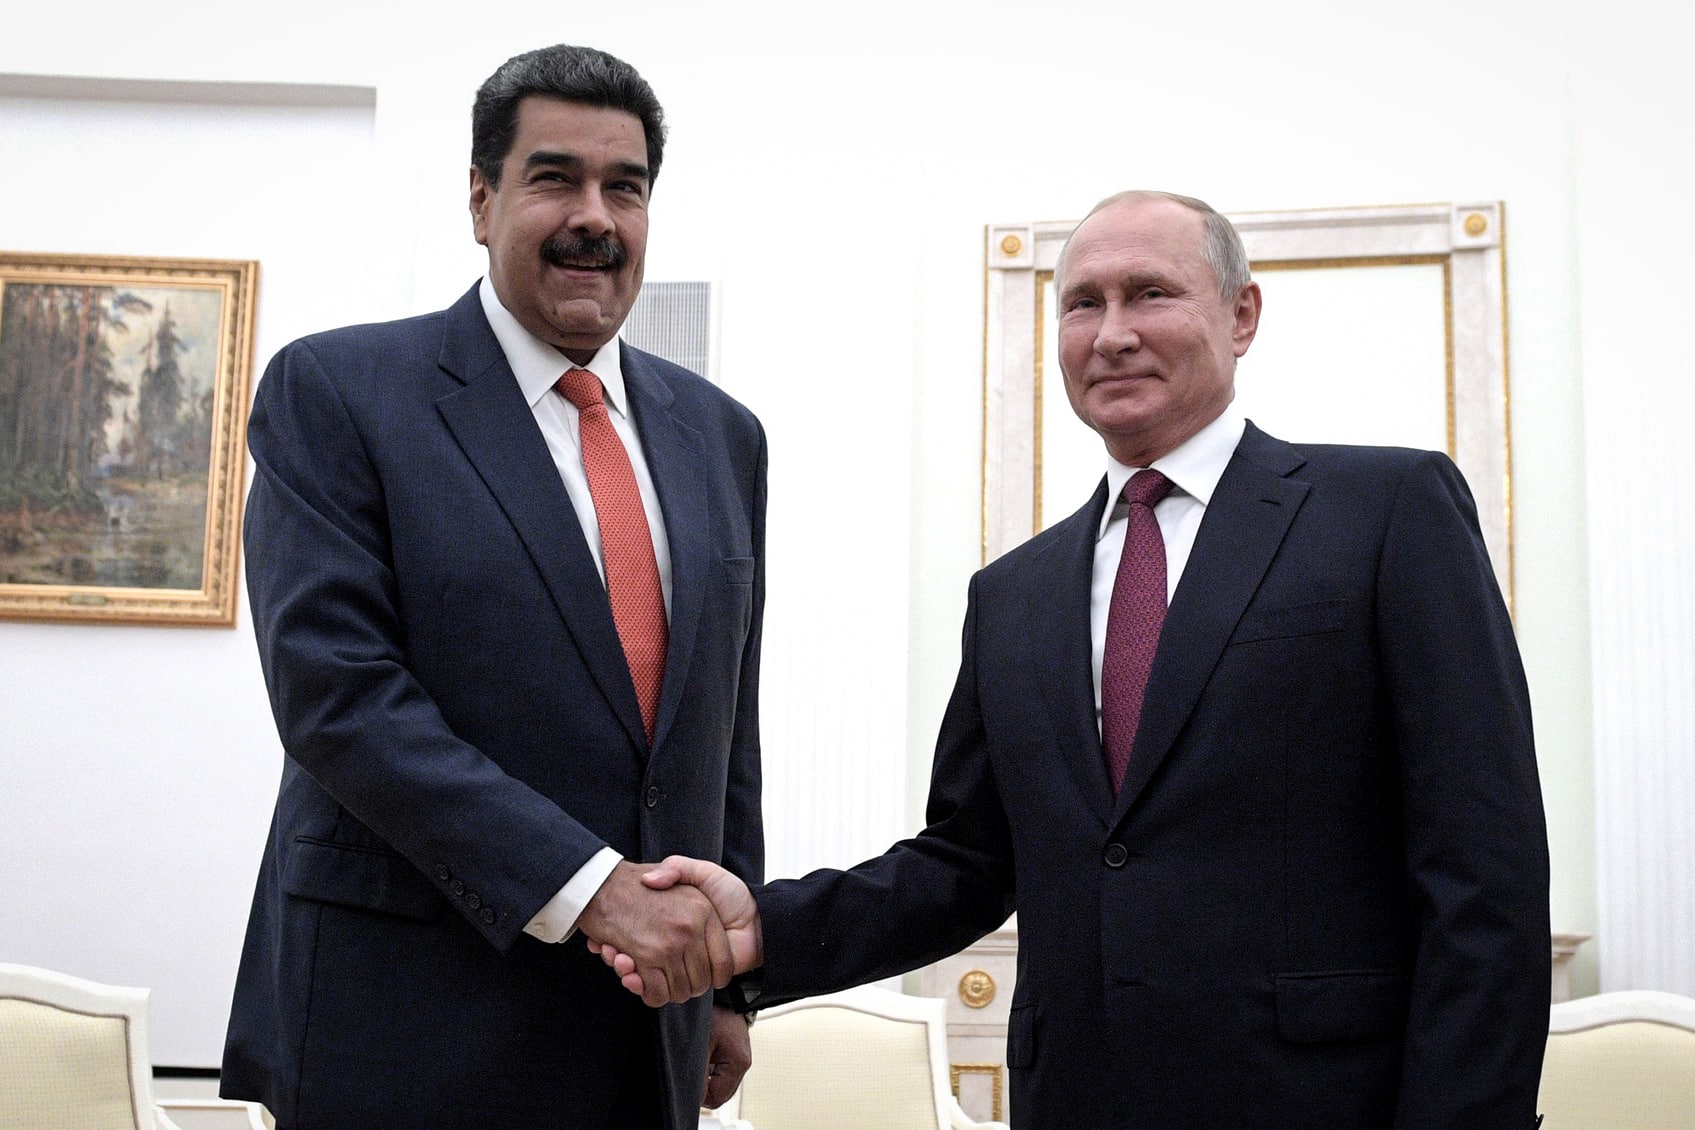 Maduro y Putin se estrechan la mano en una reunión en Moscú (Rusia)